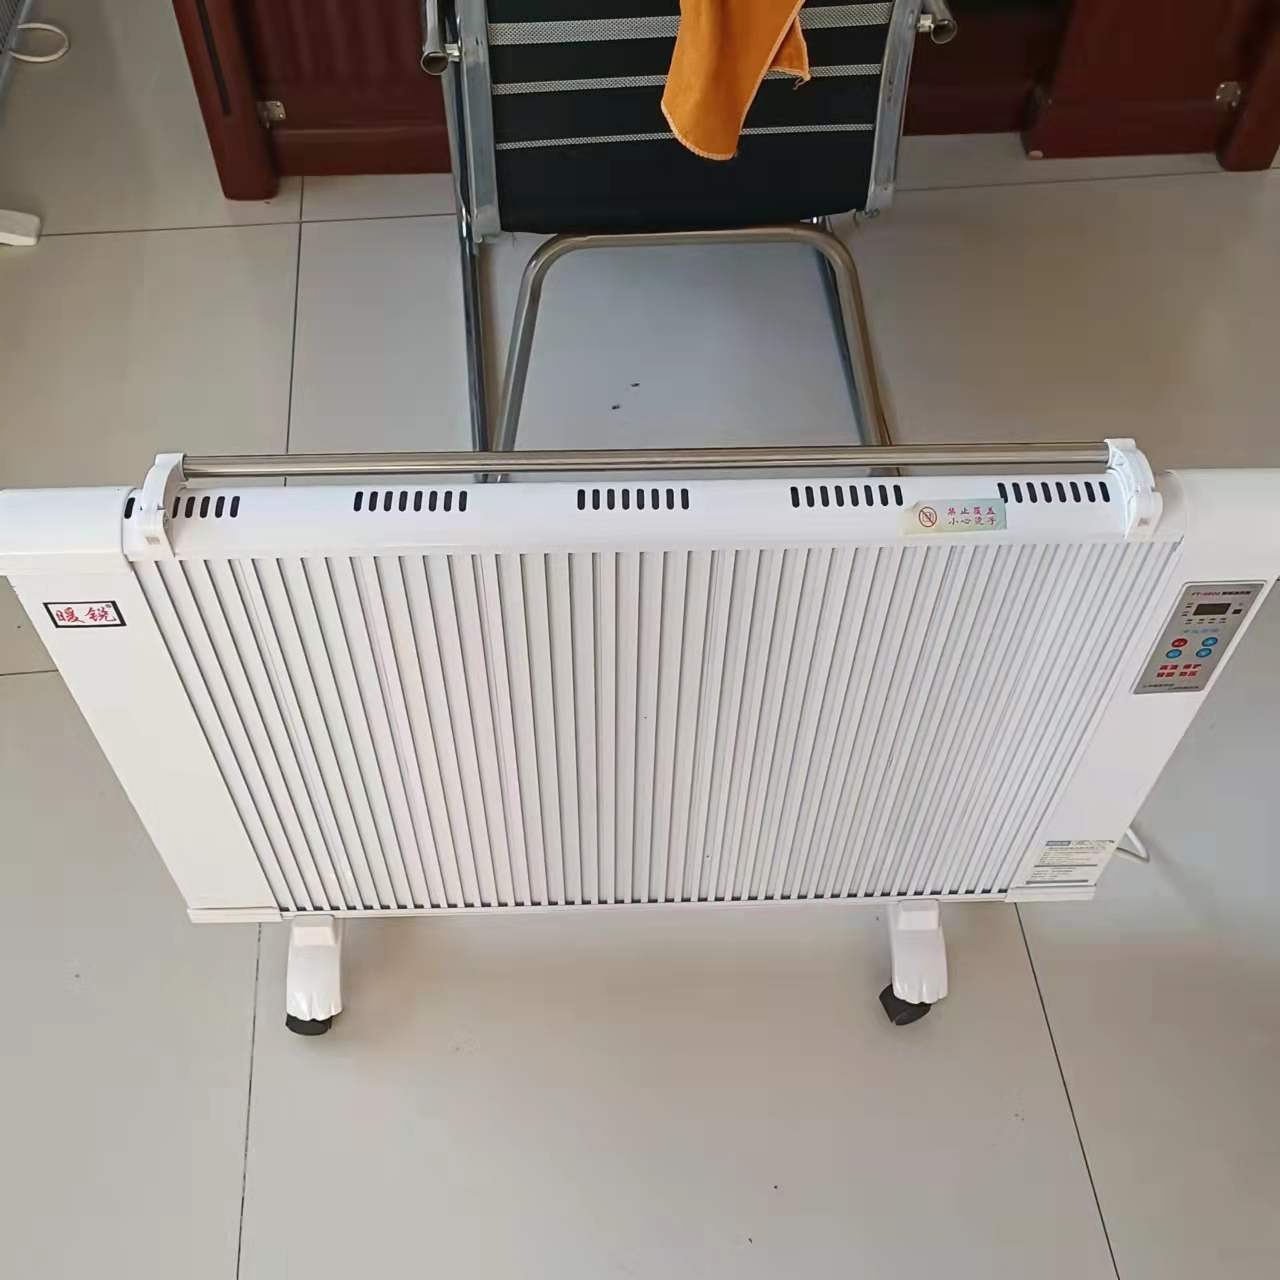 煤改电电暖器 暖硕 NS-2碳晶电暖器  对流式电加热器 量大从优图片